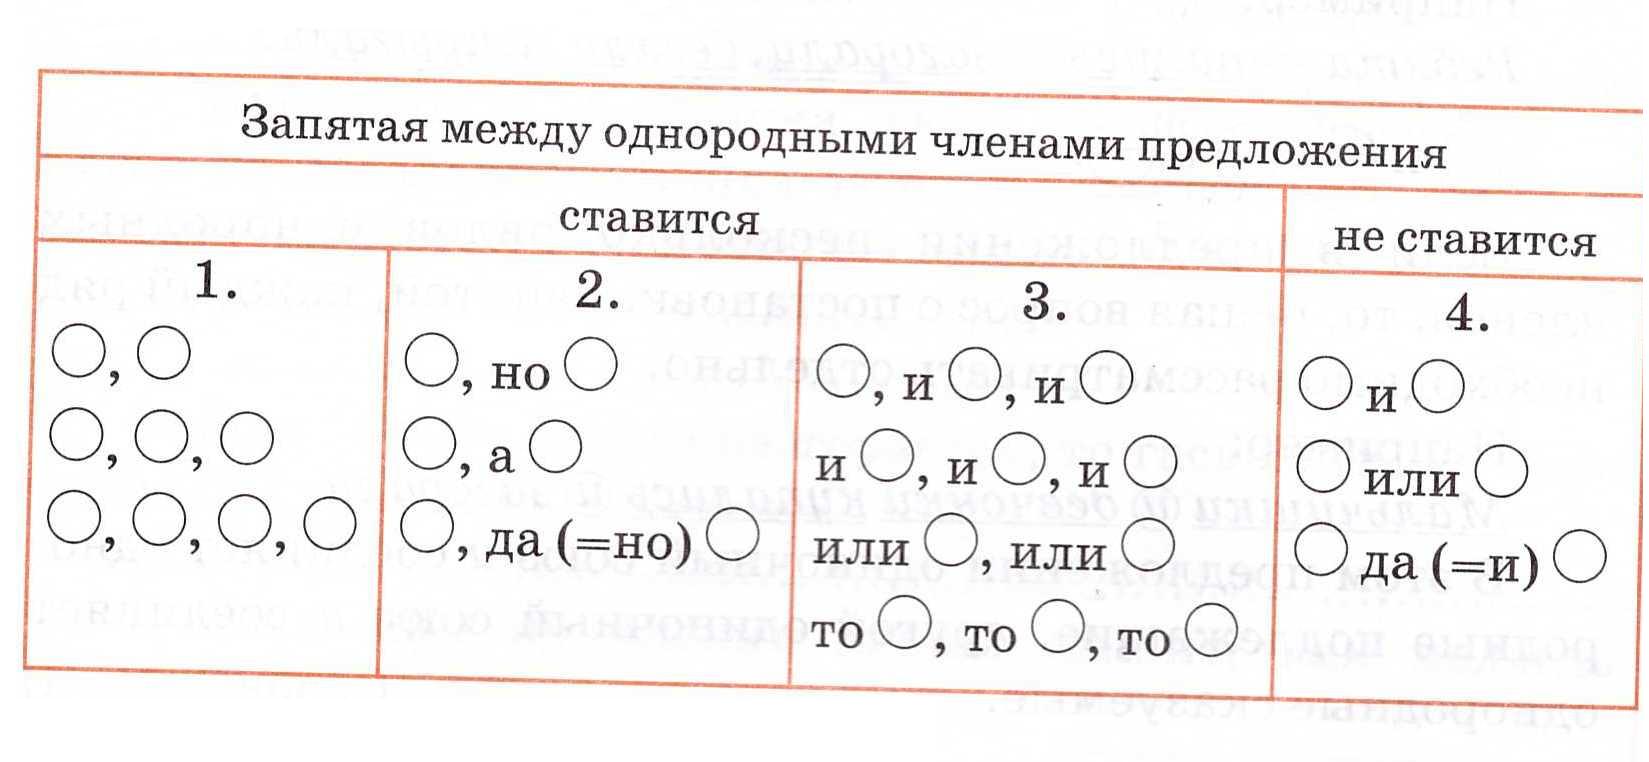 Открытый урок по русскому языку в 5 классе на тему: «Однородные члены предложения и знаки препинания при них»